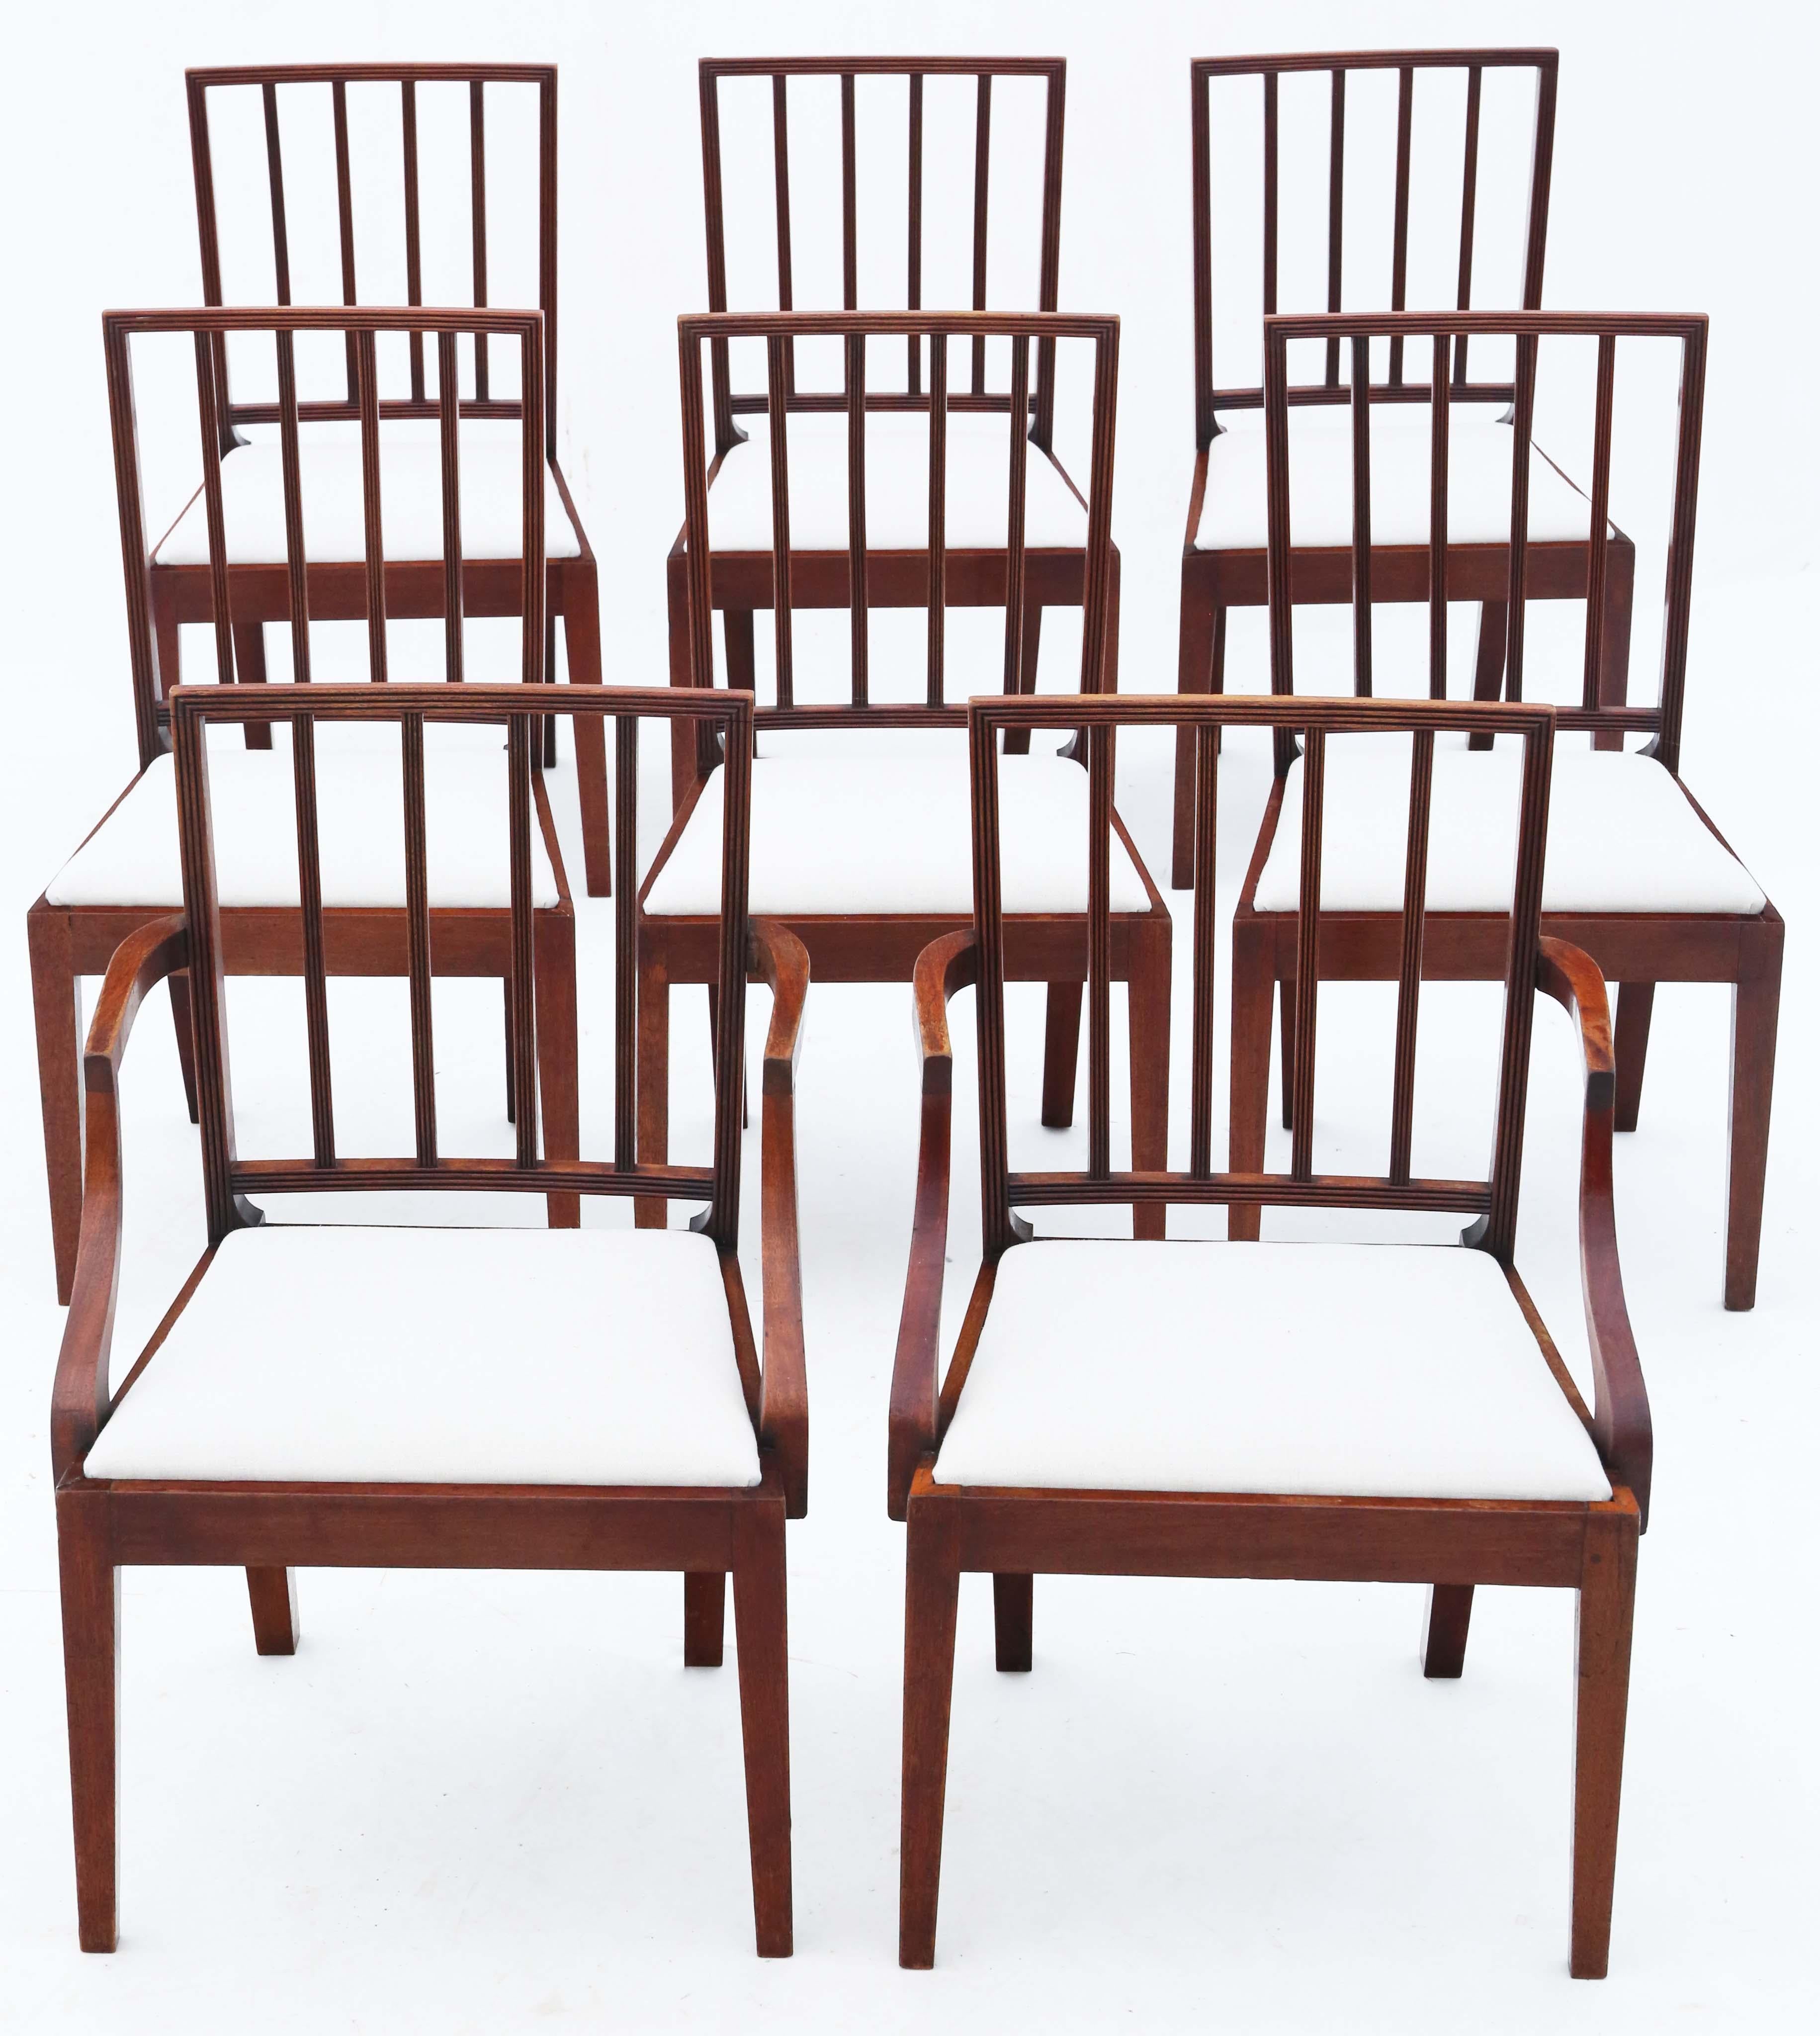 Tauchen Sie ein in die seltene Eleganz dieses außergewöhnlichen Satzes von 8 (6 plus 2) Mahagoni-Esszimmerstühlen aus dem frühen 19. Jahrhundert, die auf ca. 1820 zurückgehen. Diese Stühle zeichnen sich durch ein schlichtes, aber elegantes Design